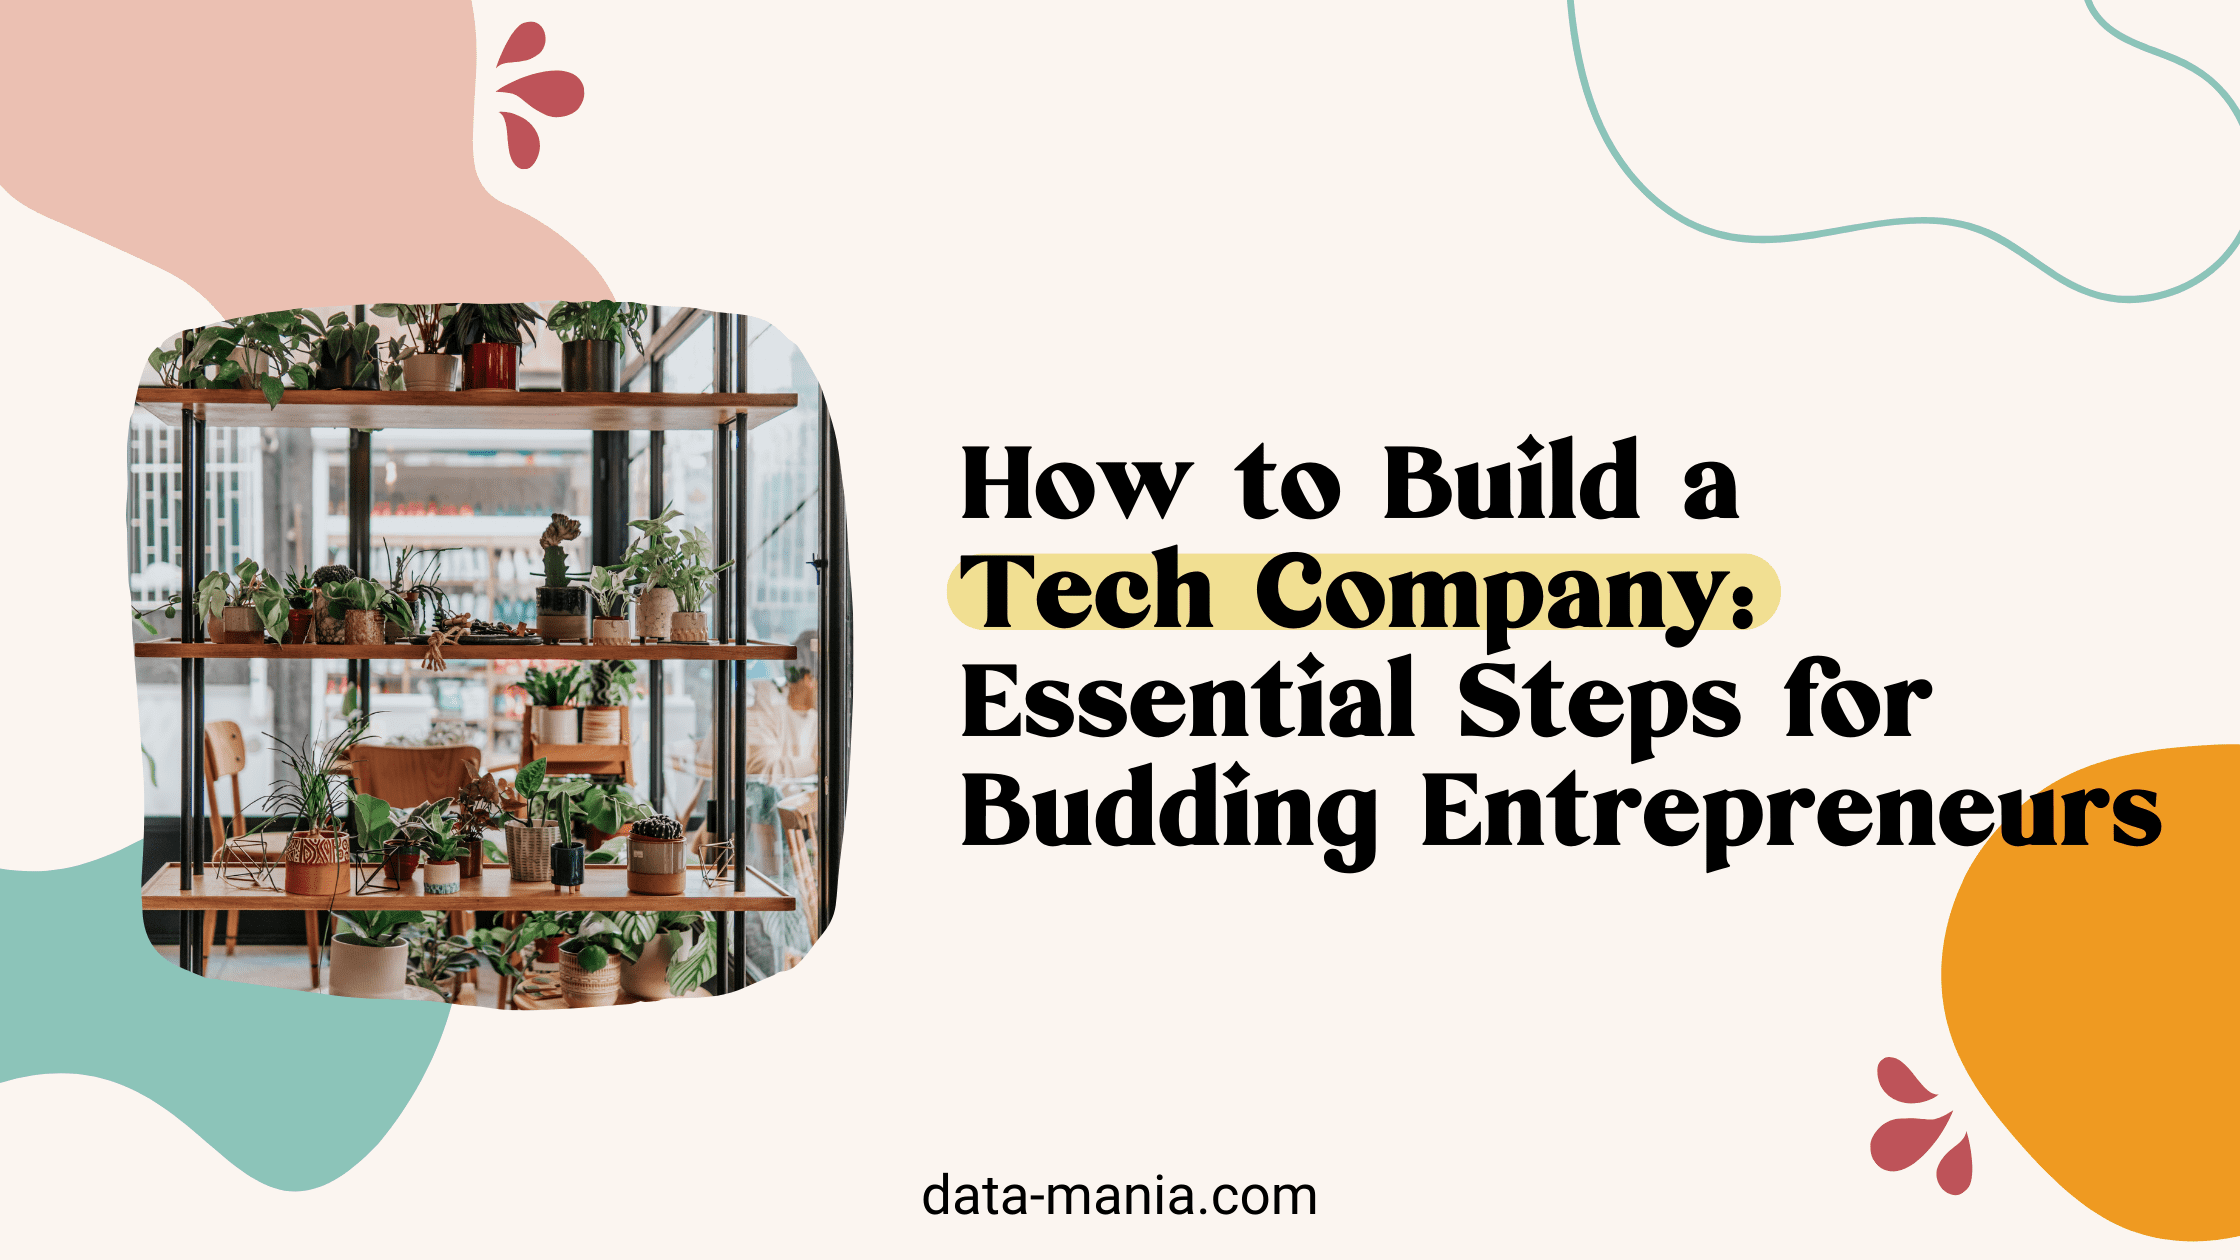 how to build a tech company - steps for budding entrepreneurs